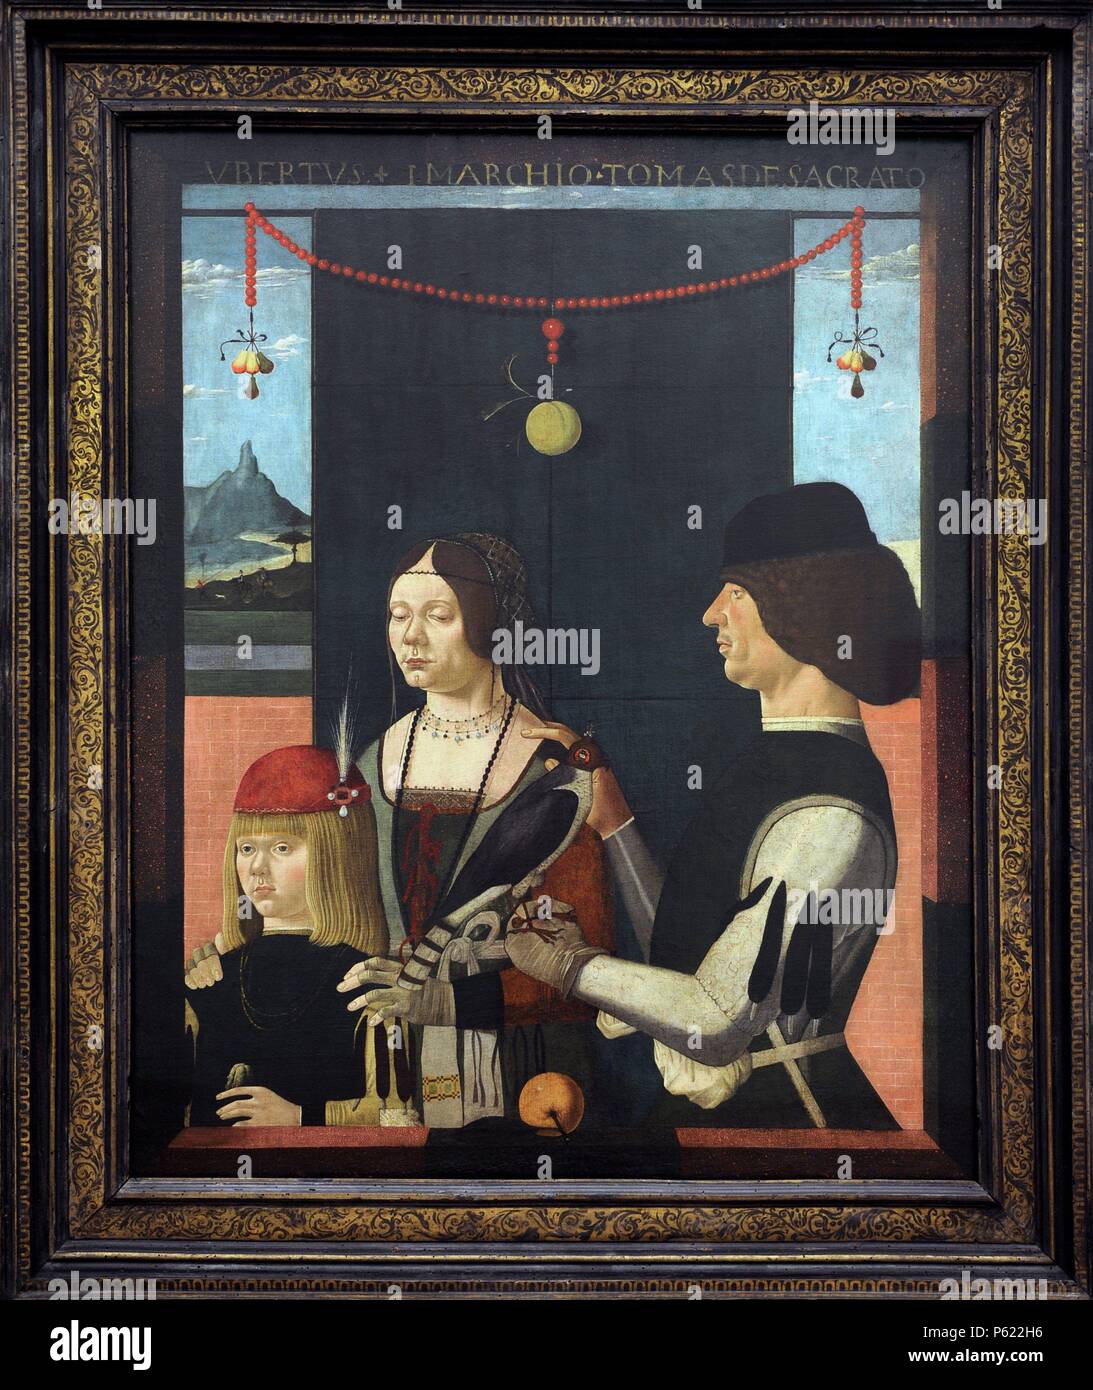 La société Ferraresischer. Peintre, 15ème siècle. Portrait de famille., 1480. Alte Pinakotheka. Munich. L'Allemagne. Banque D'Images